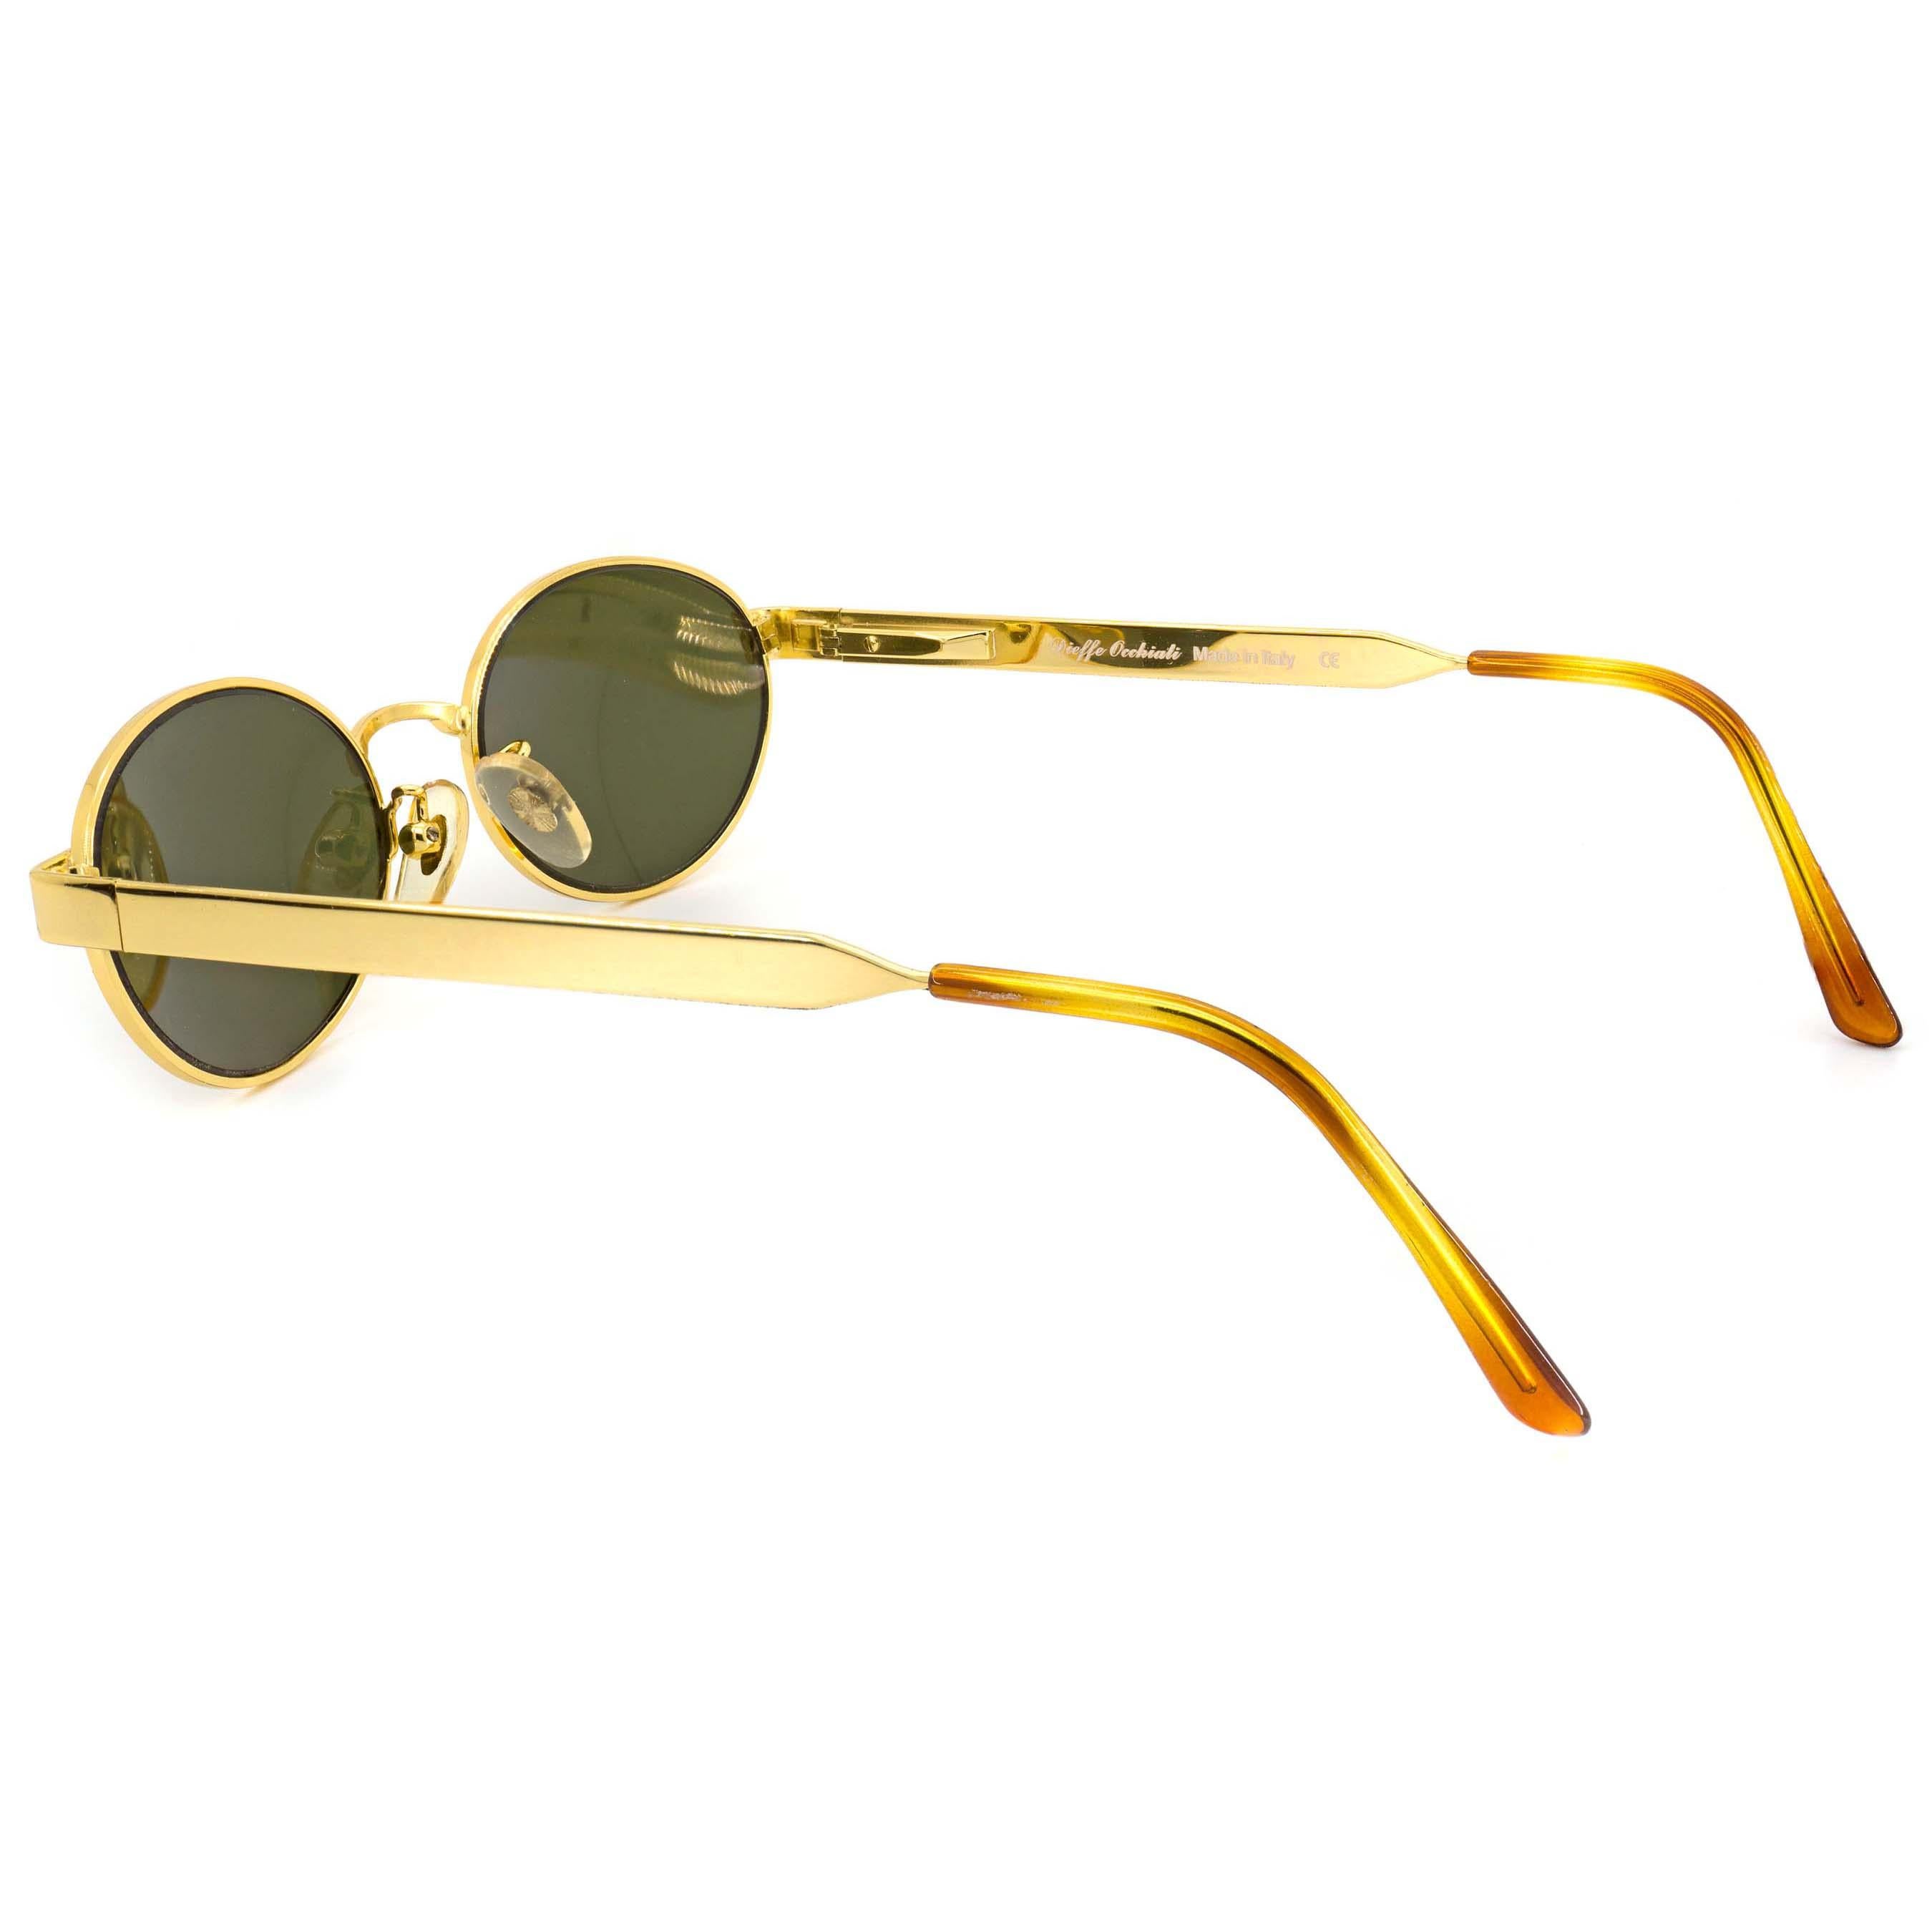 Top Gun vintage sunglasses In New Condition For Sale In Santa Clarita, CA